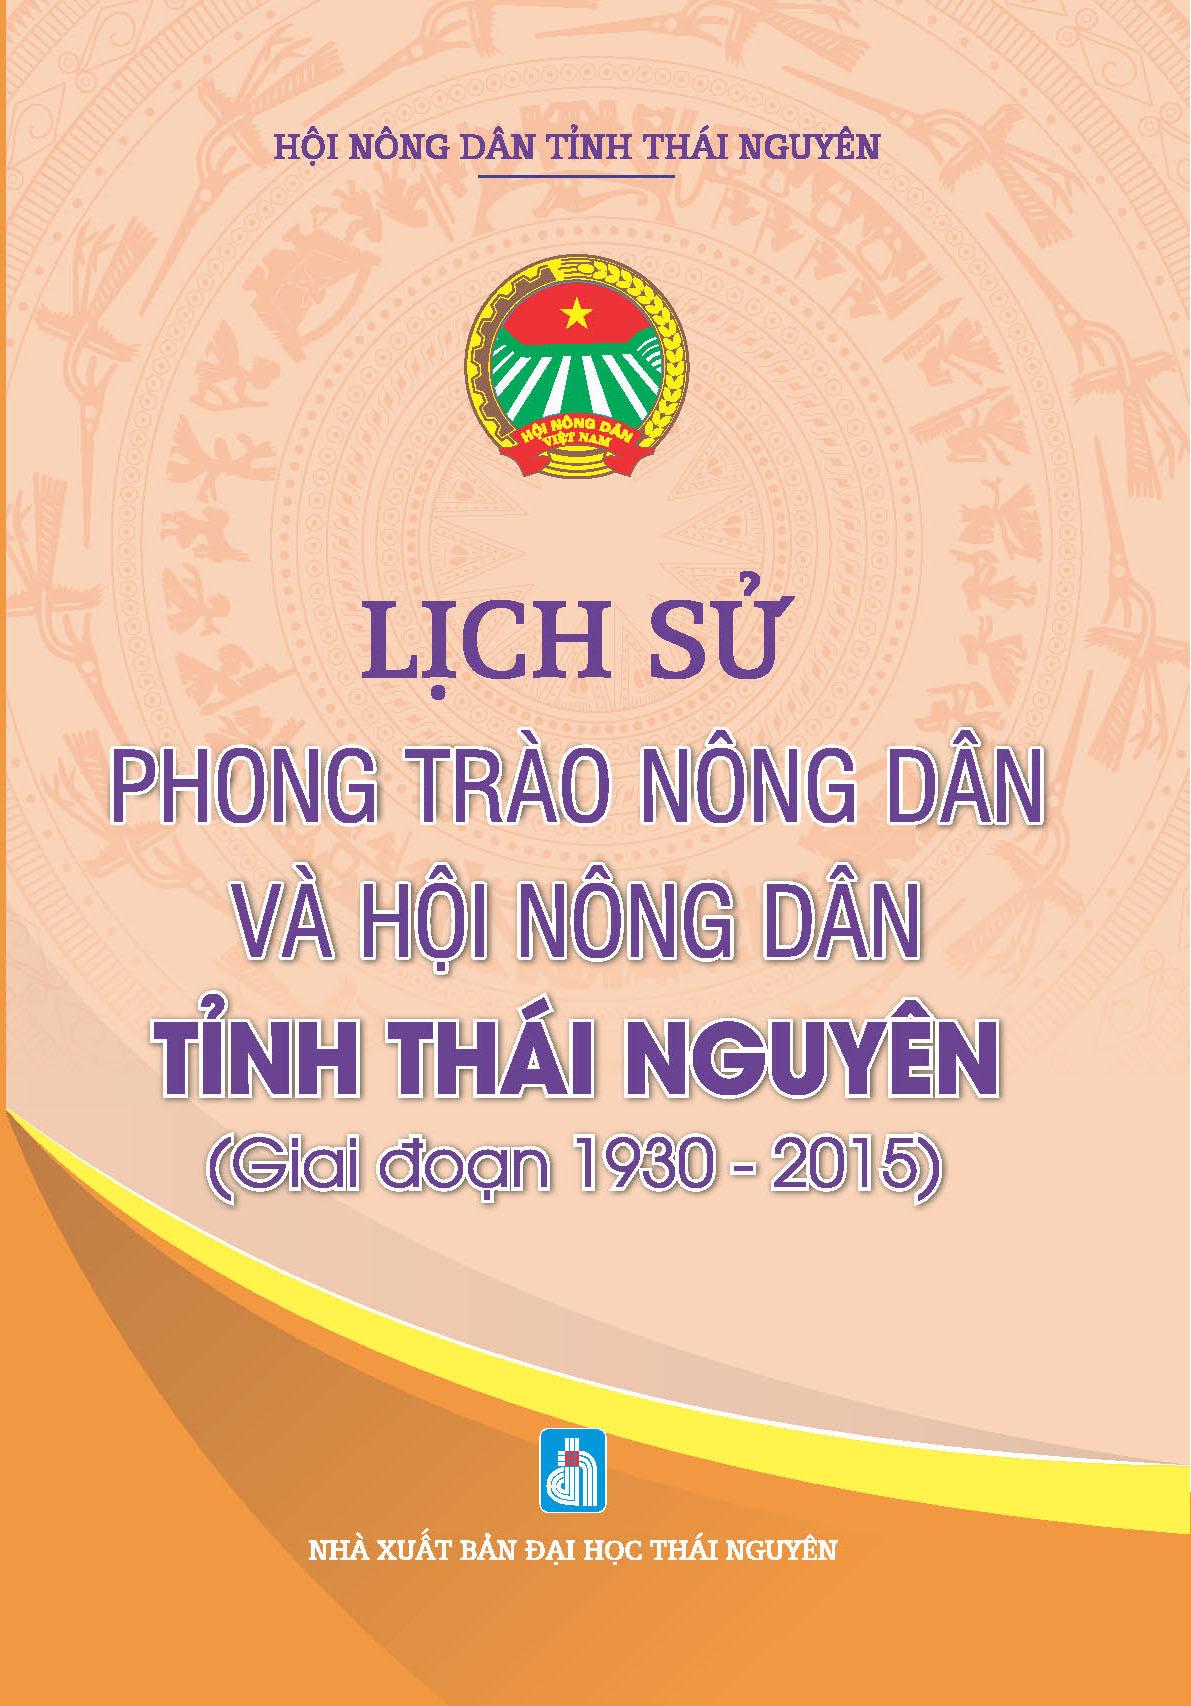 Lịch sử phong trào nông dân và Hội Nông dân tỉnh Thái Nguyên (giai đoạn 1930 - 2015)